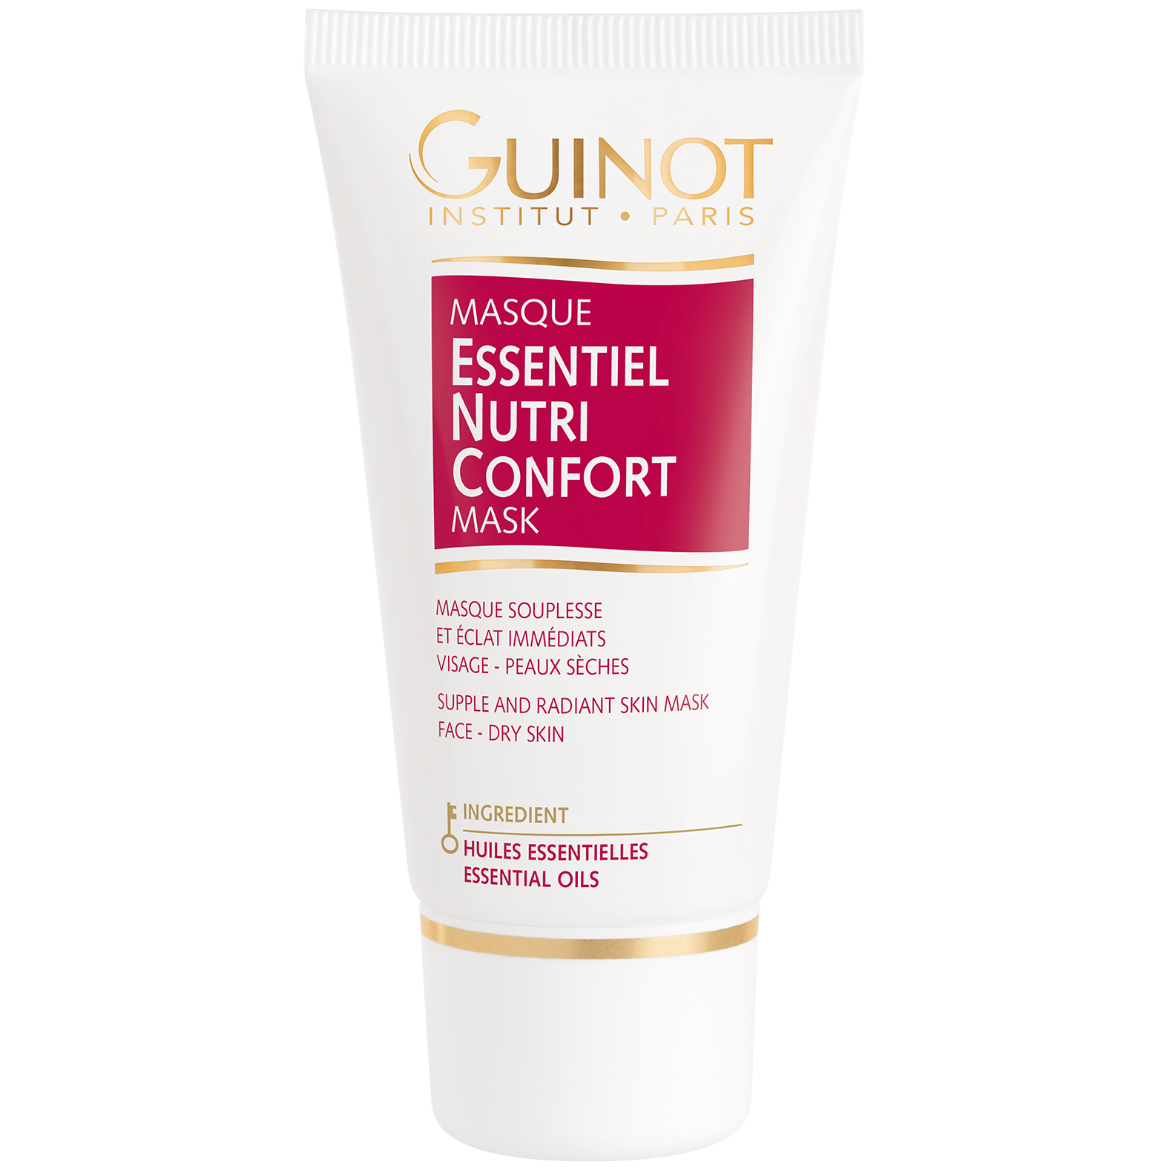 Immagine di Guinot Masque Essential Nutri Confort (50ml)